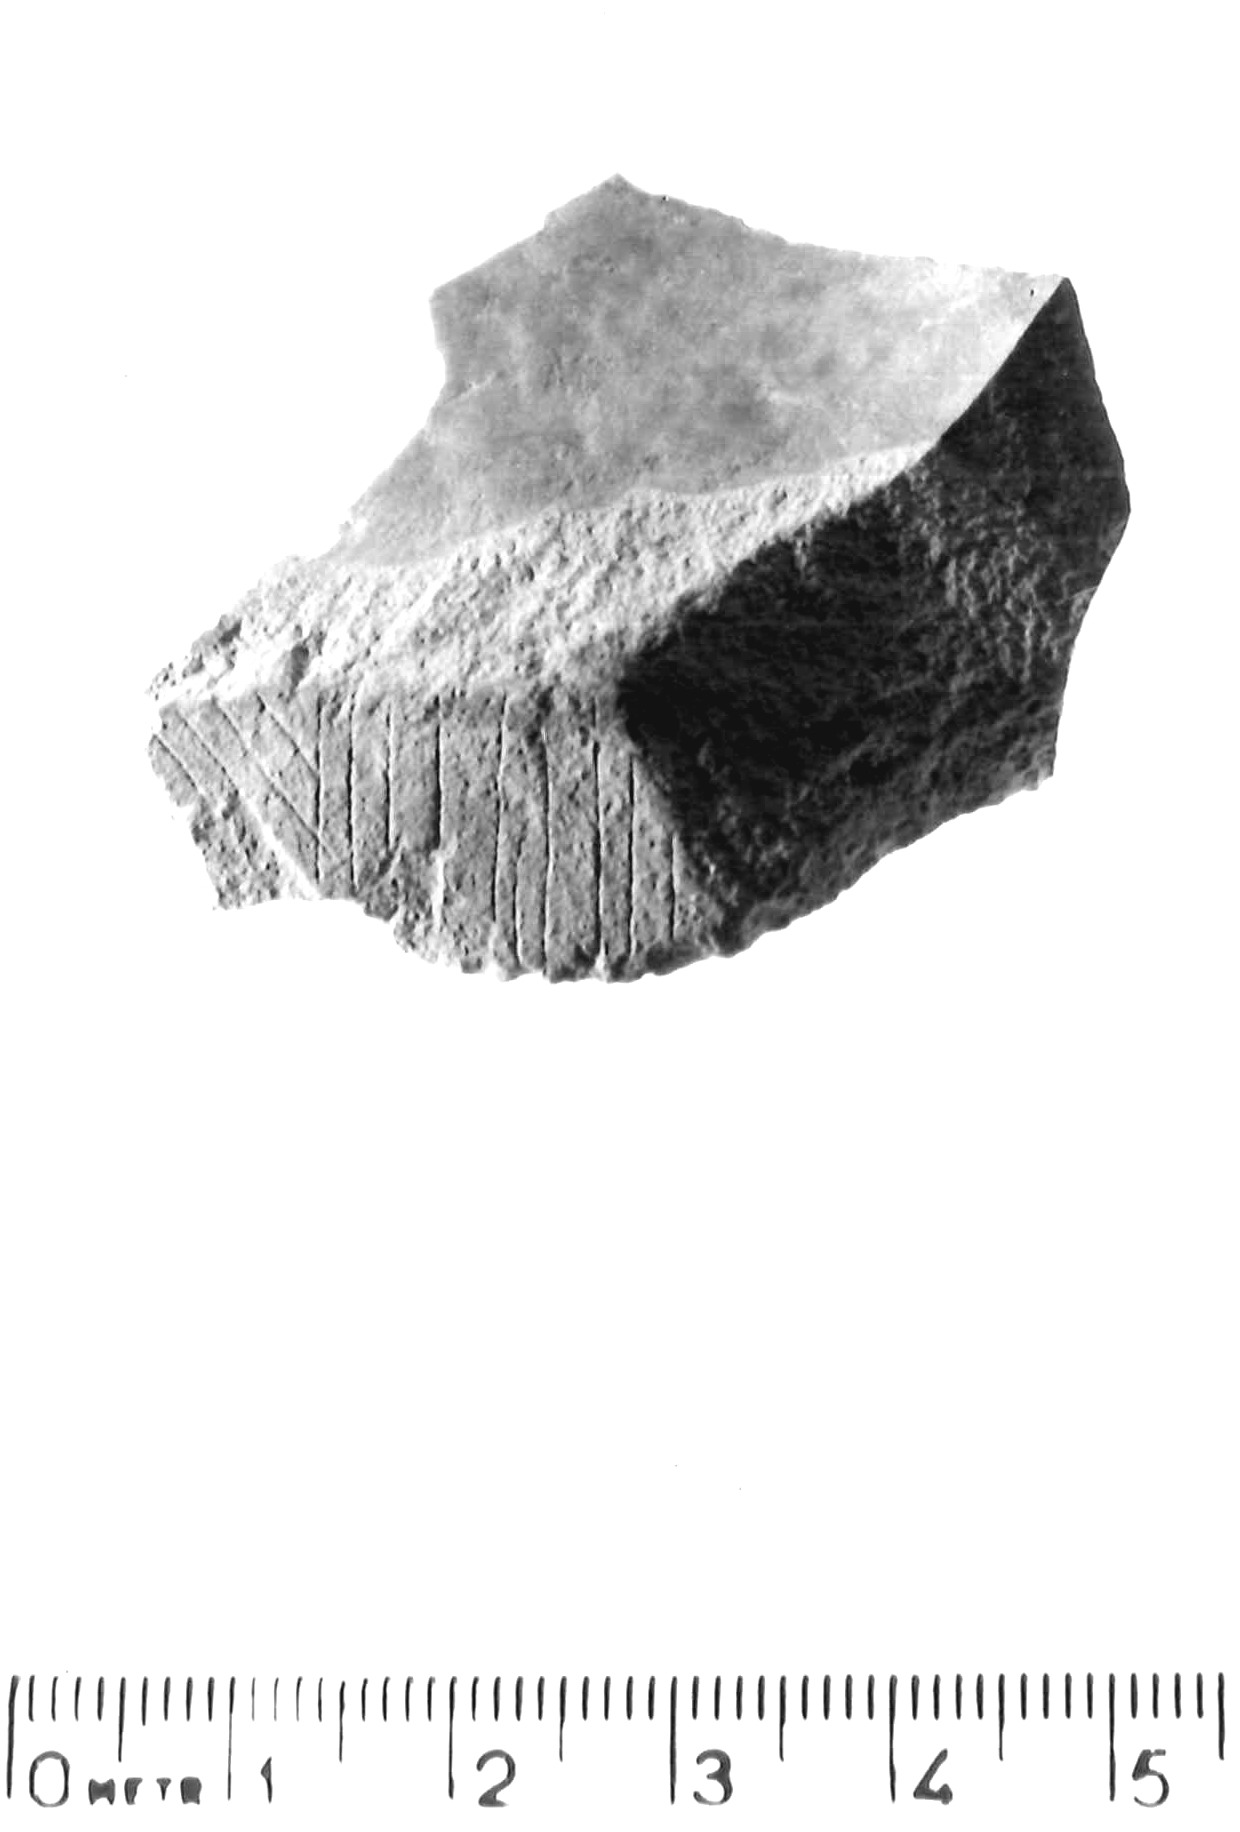 scheggia - epigravettiano antico (paleolitico superiore)